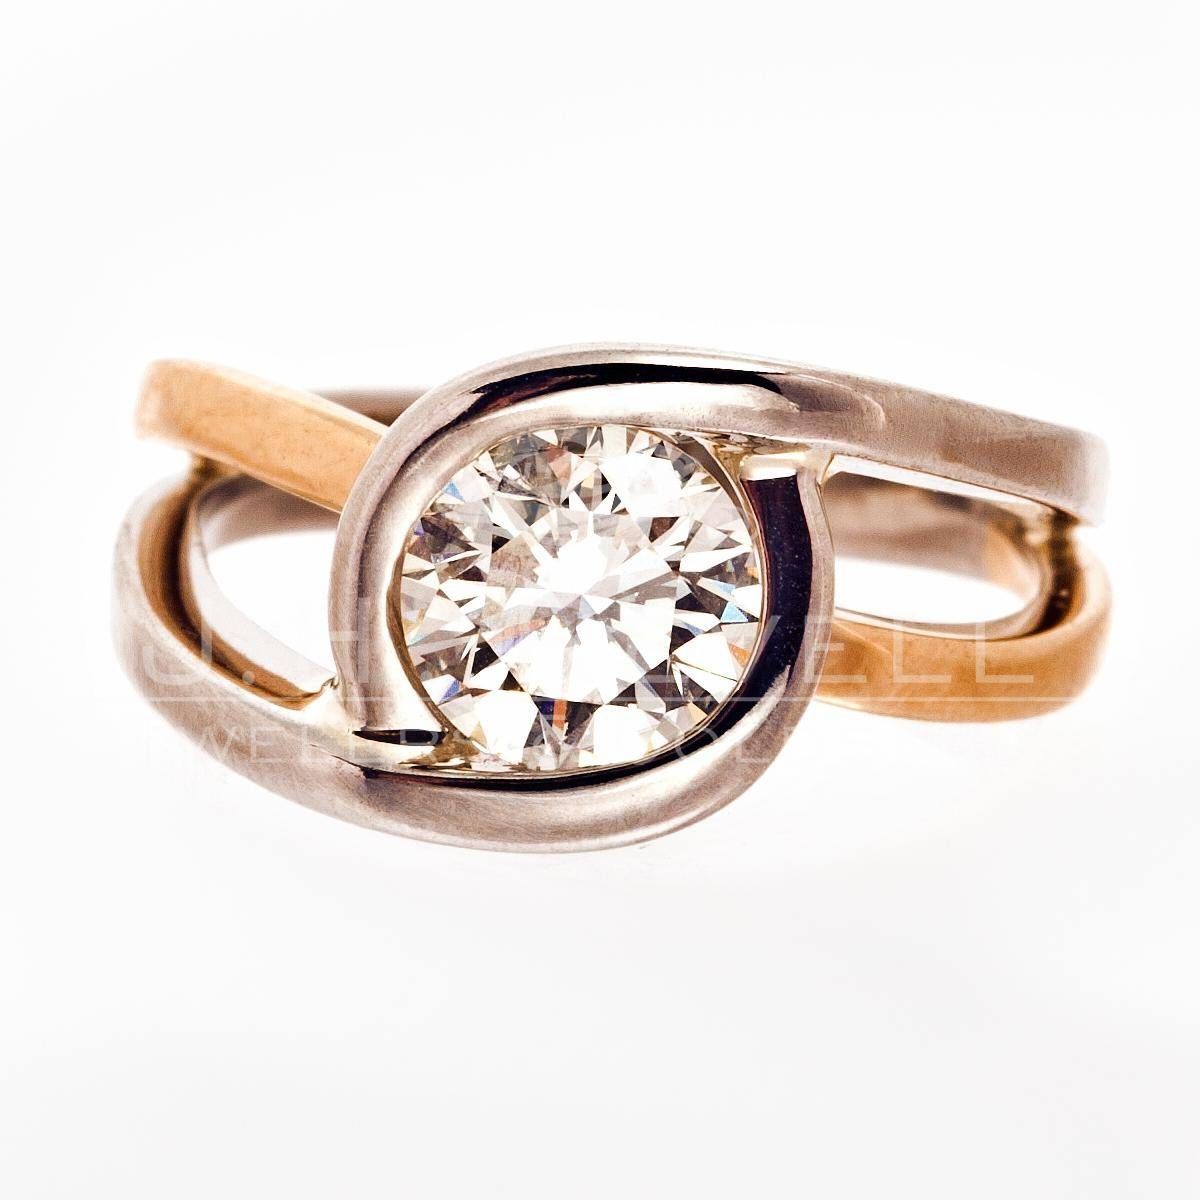 Two Tone Bezel Set Diamond Ring | Revell Jewelers Regarding Two Tone Bezel Set Engagement Rings (View 8 of 15)